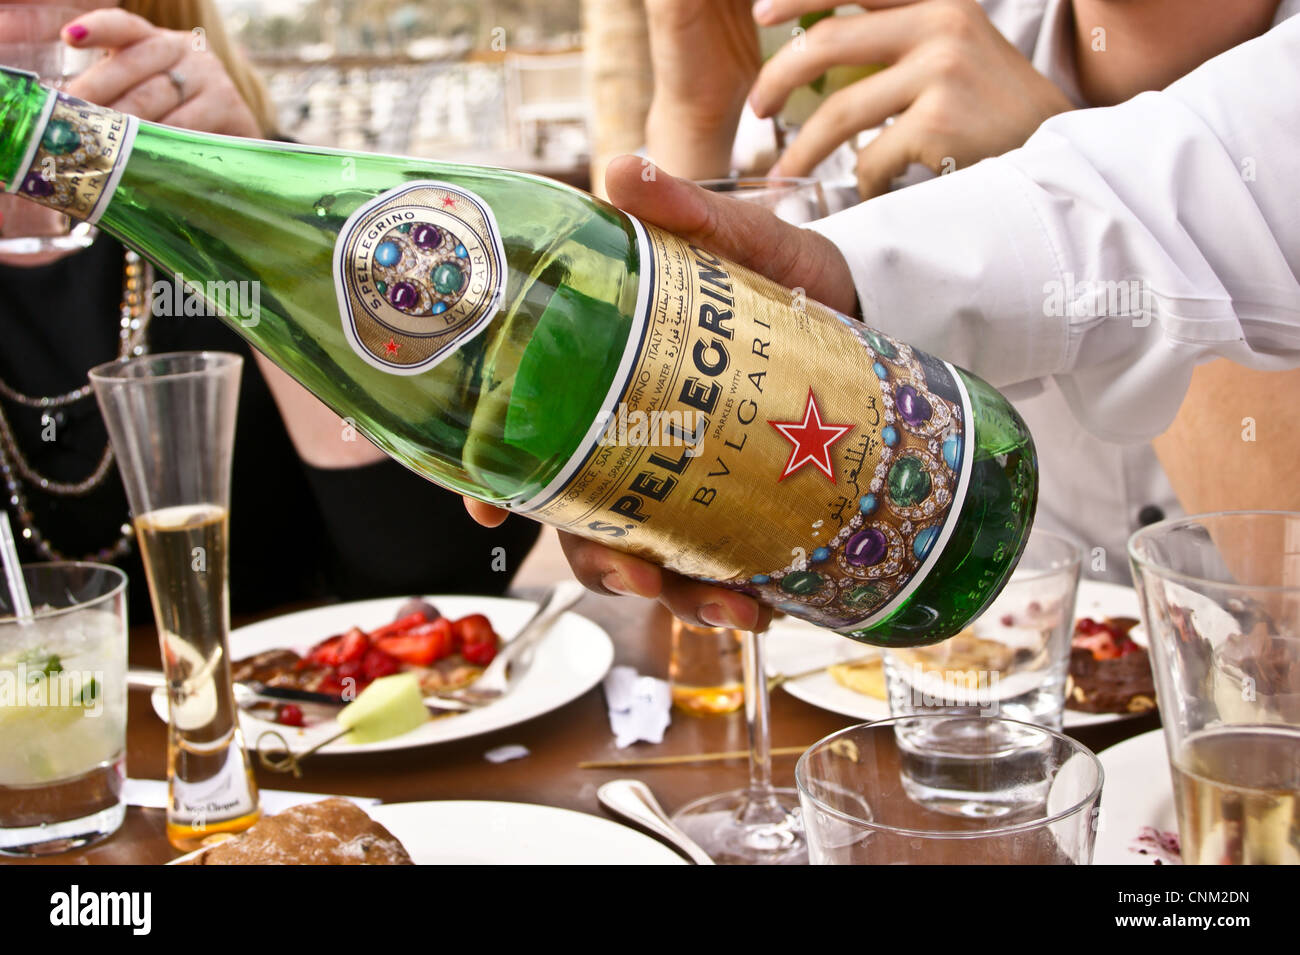 a-bulgari-branded-bottle-of-san-pellegri